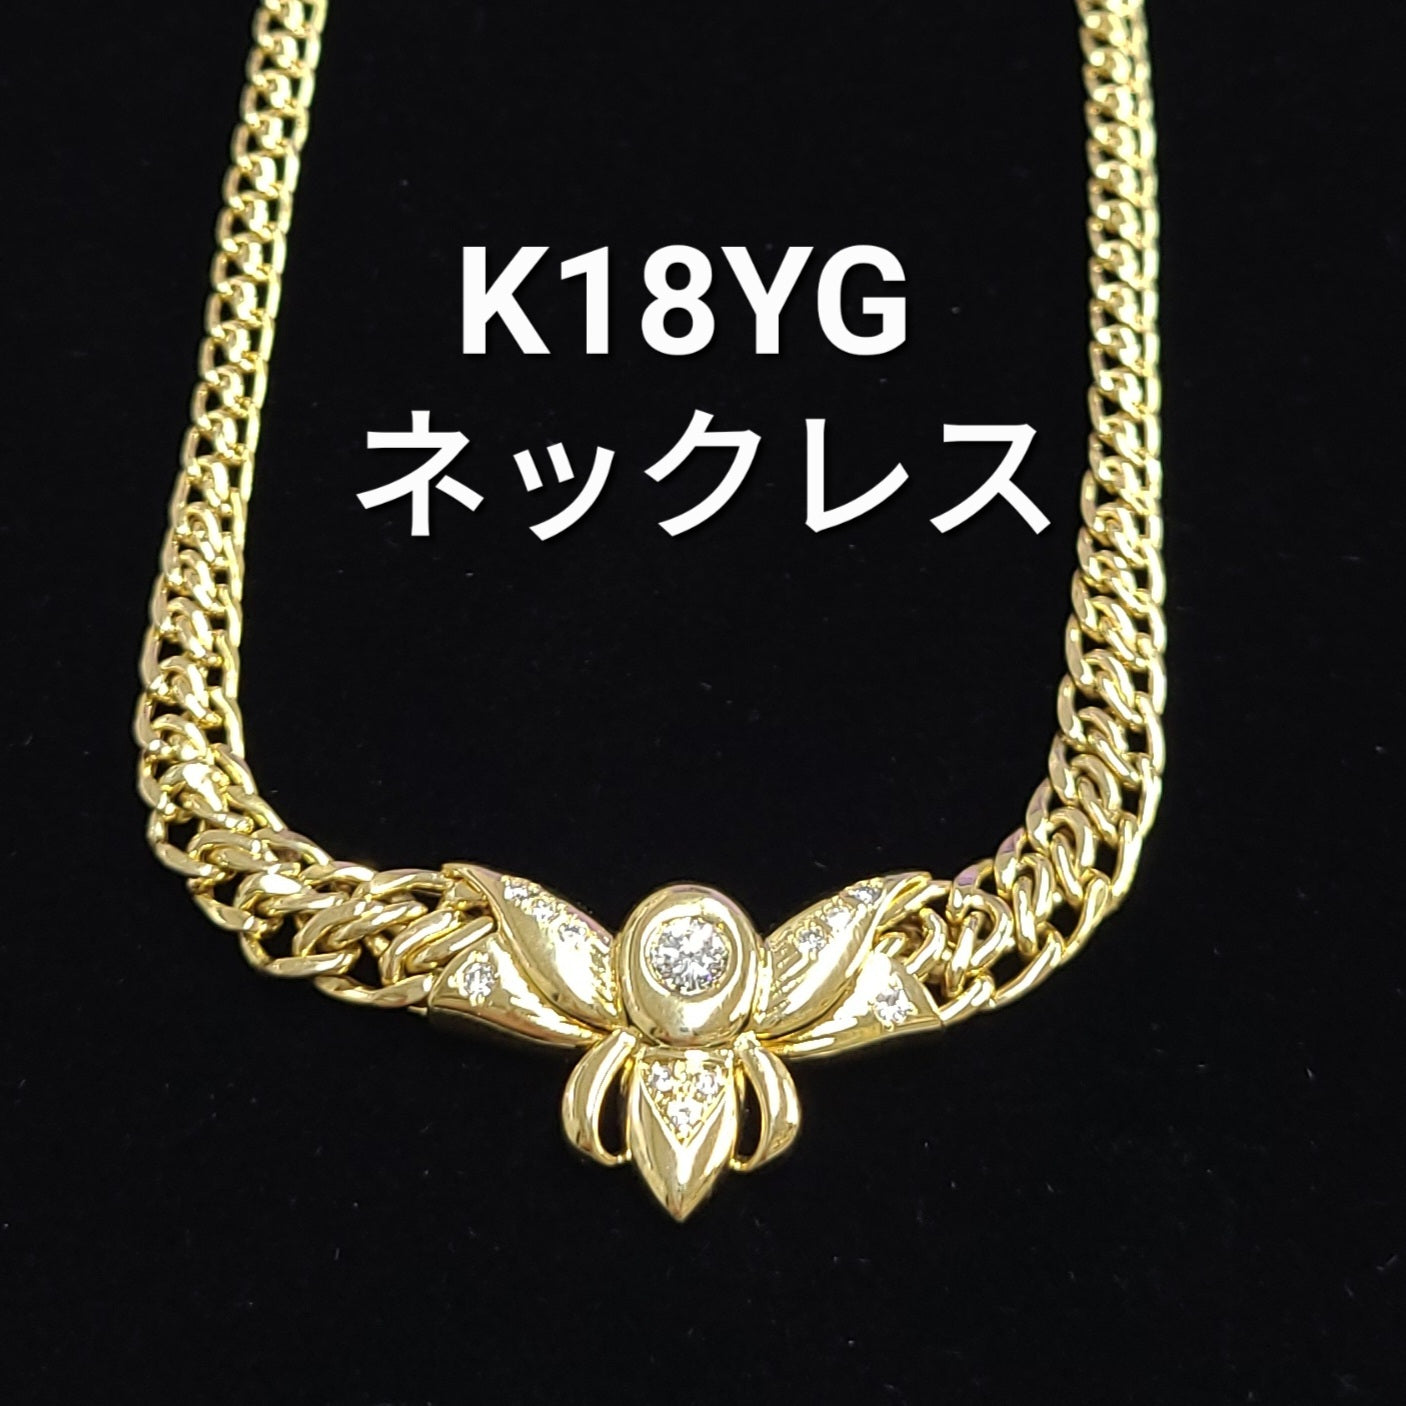 上品な輝き 天然 ダイヤモンド K18 YG イエローゴールド ペンダント ネックレス 4月誕生石 【鑑別書付】